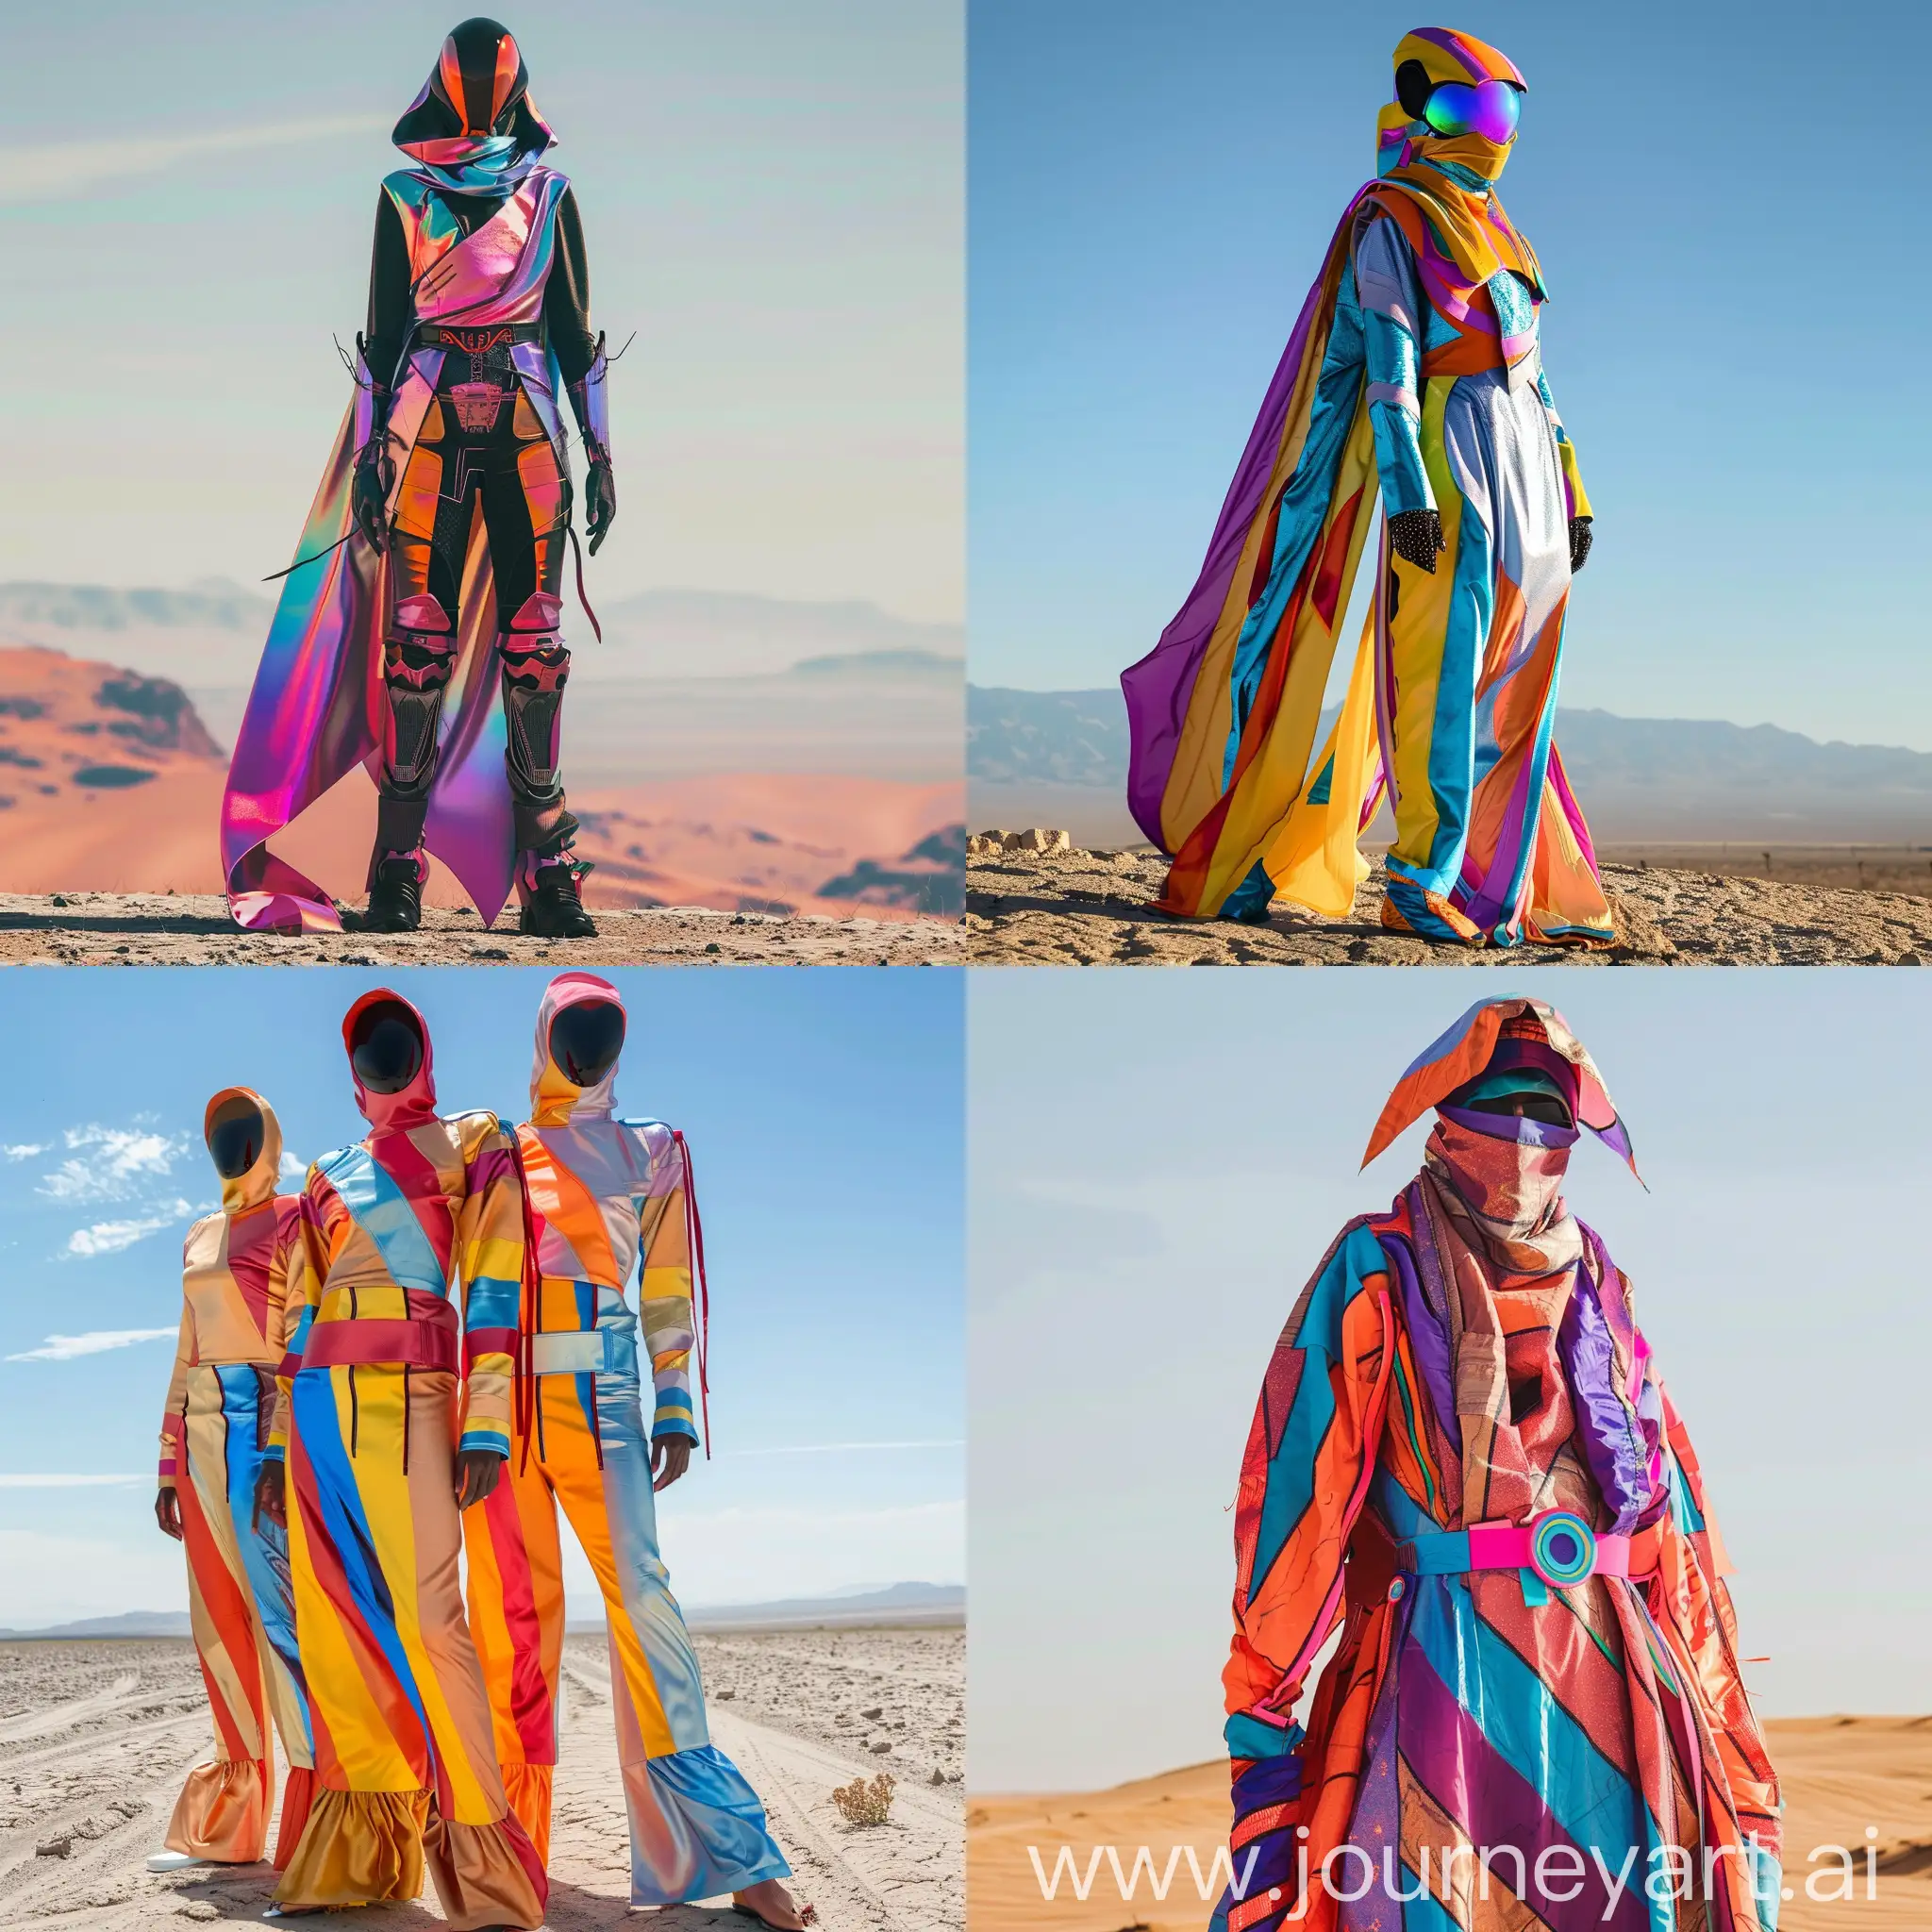 Vibrant-Futuristic-Desert-Costumes-in-a-Colorful-Setting